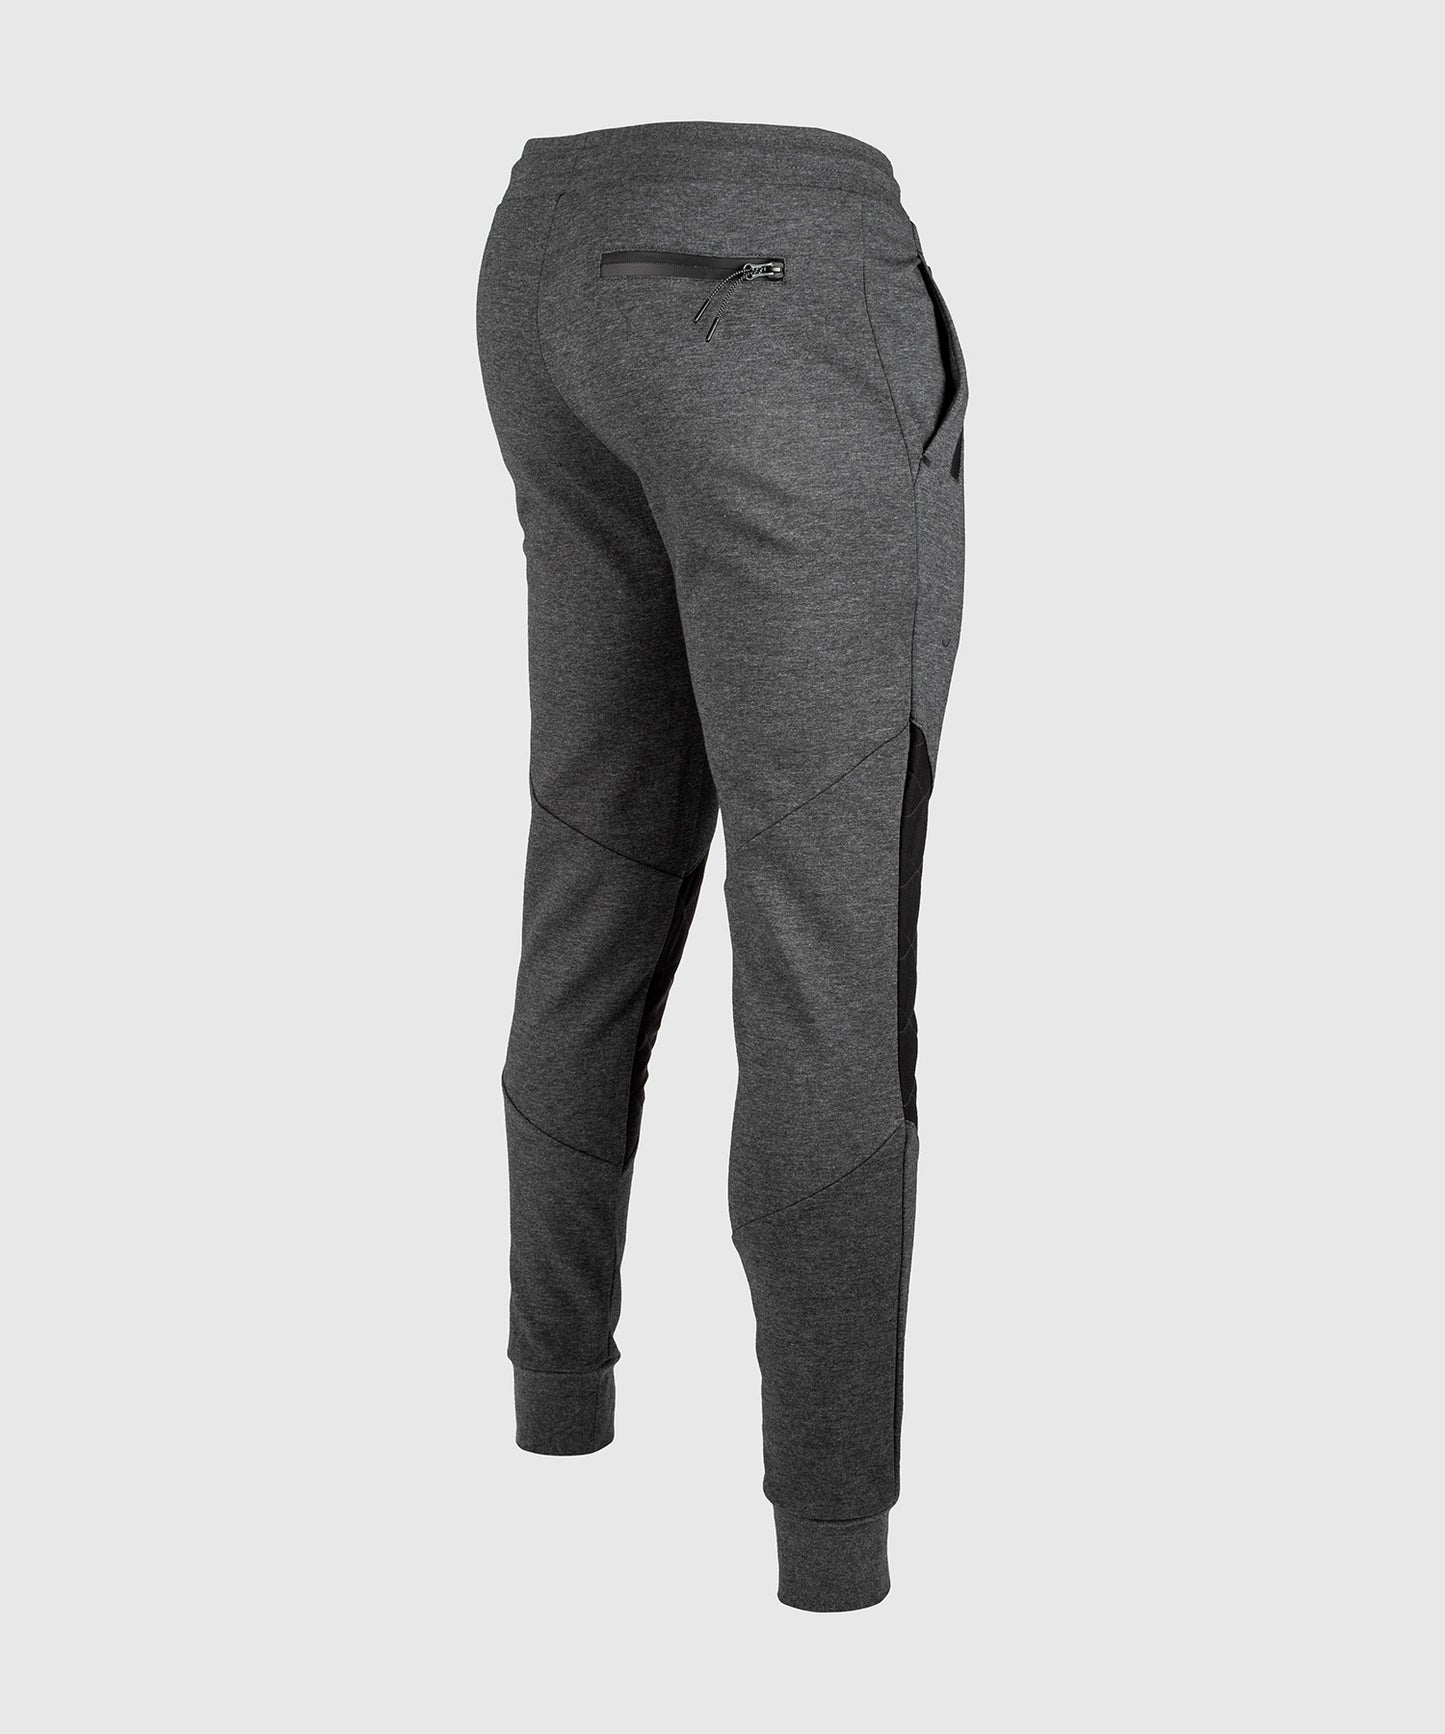 Pantaloni tuta Venum Laser 2.0 - Grigio erica - Esclusivo